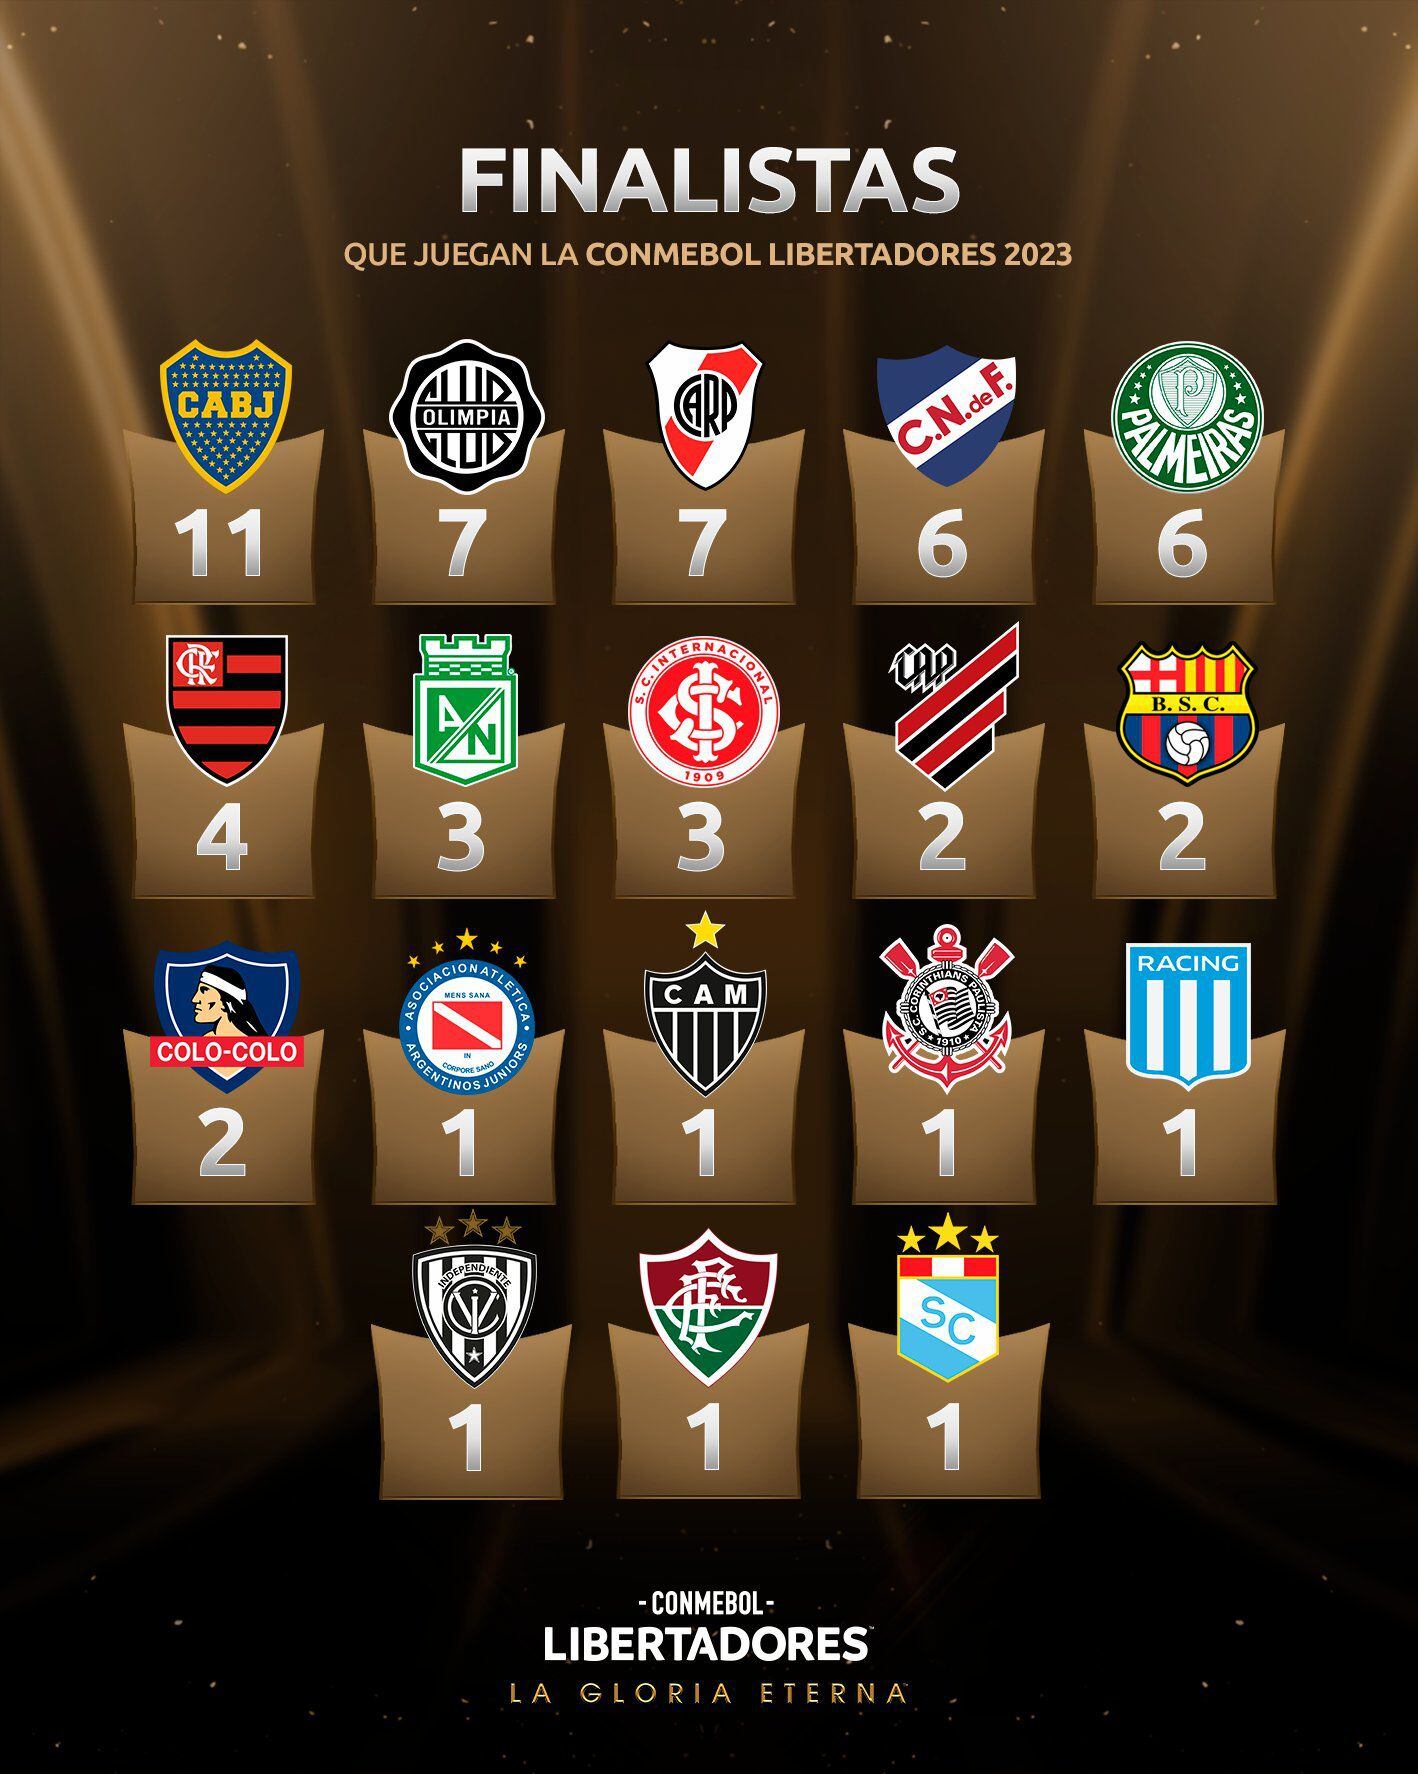 Clubes que participan en la presente edición y lograron ser finalistas de la Copa Libertadores. (Conmebol)